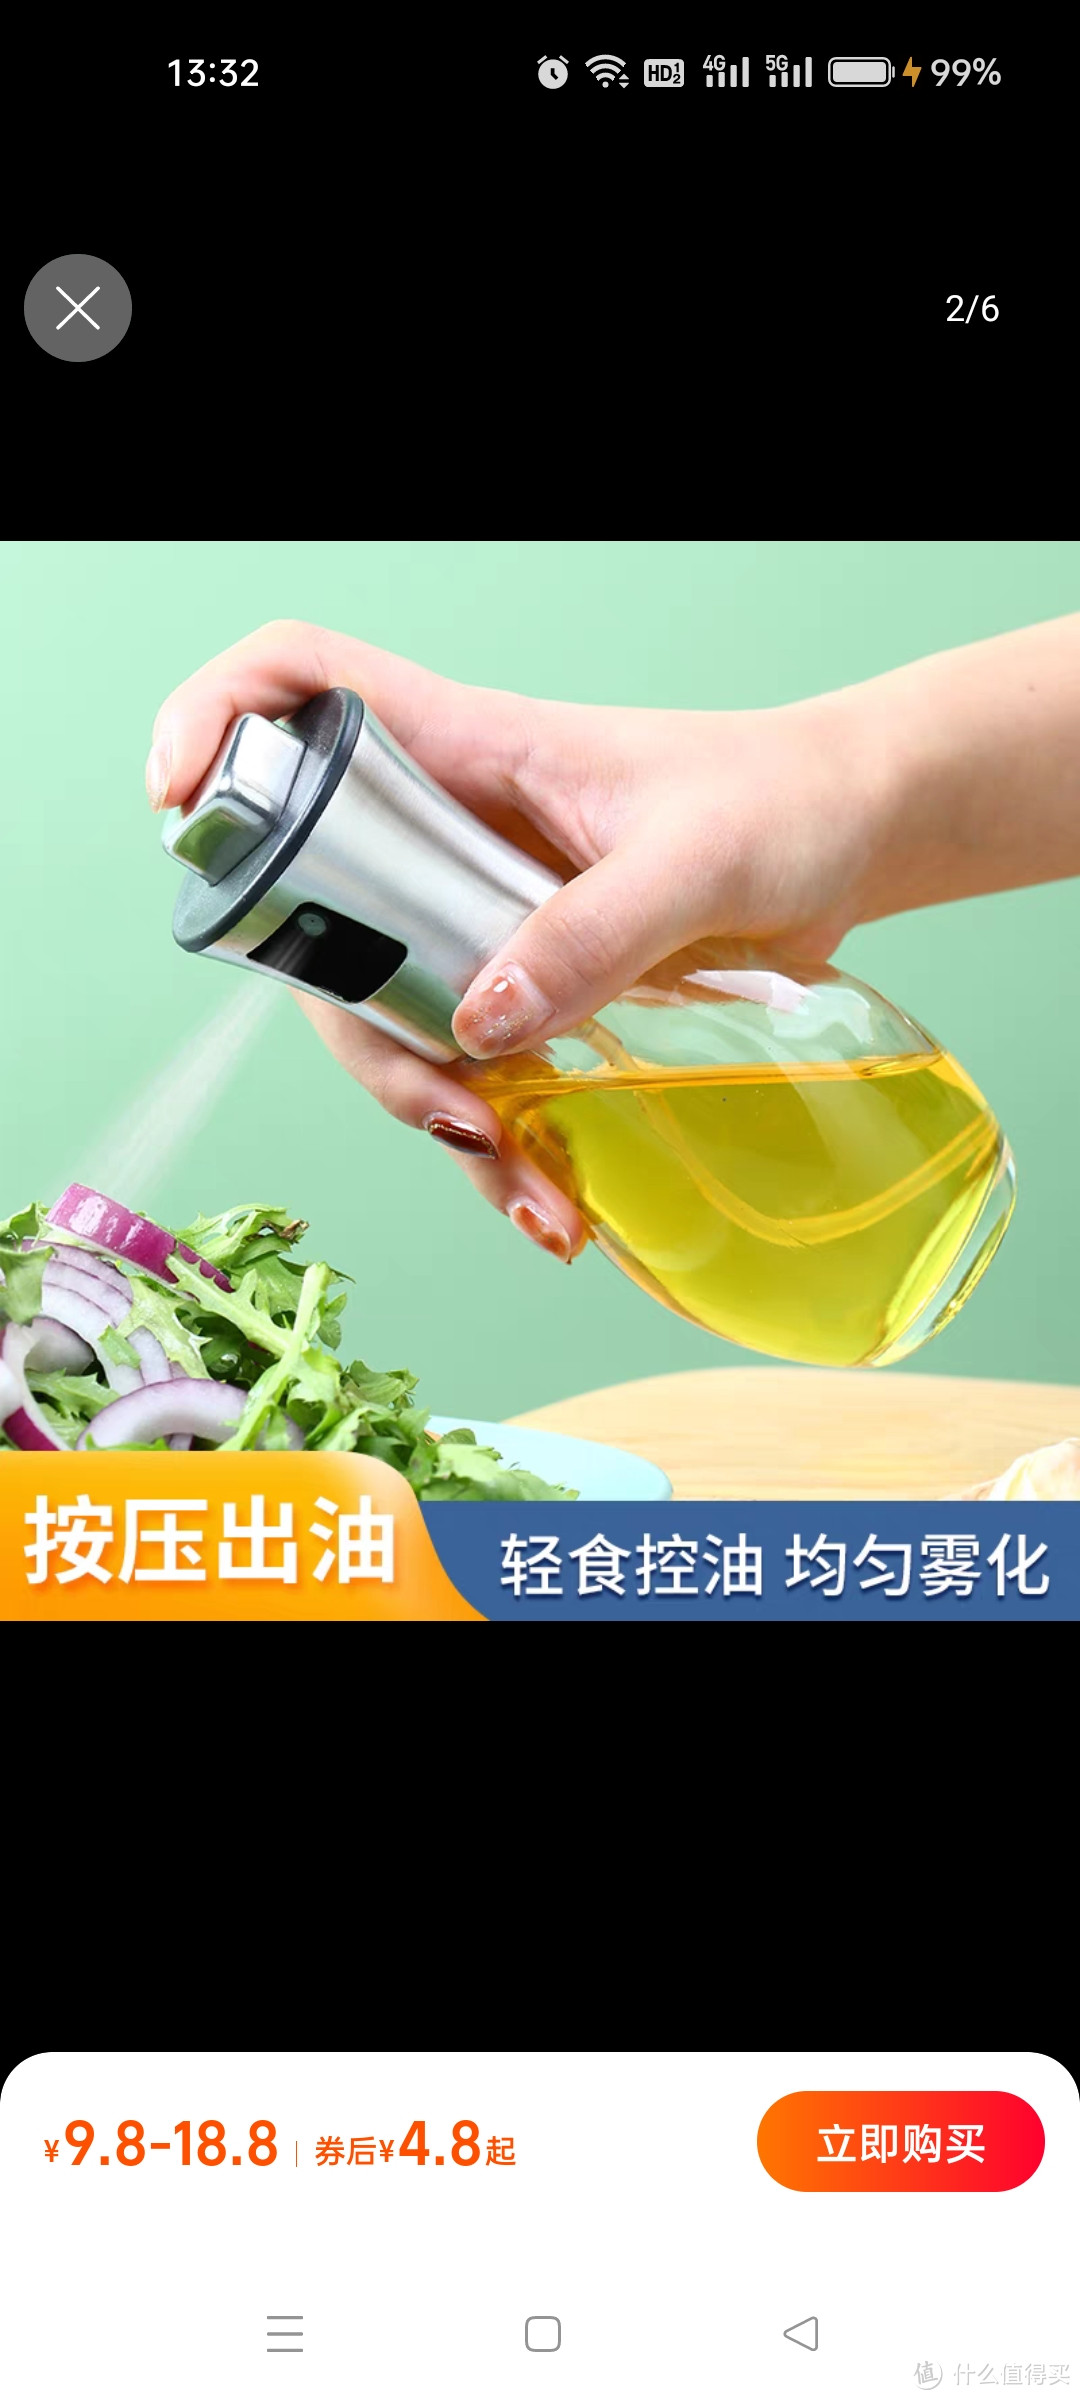 玻璃不锈钢喷油壶厨房家用食用橄榄油煎烧烤空气炸锅喷油瓶喷雾瓶